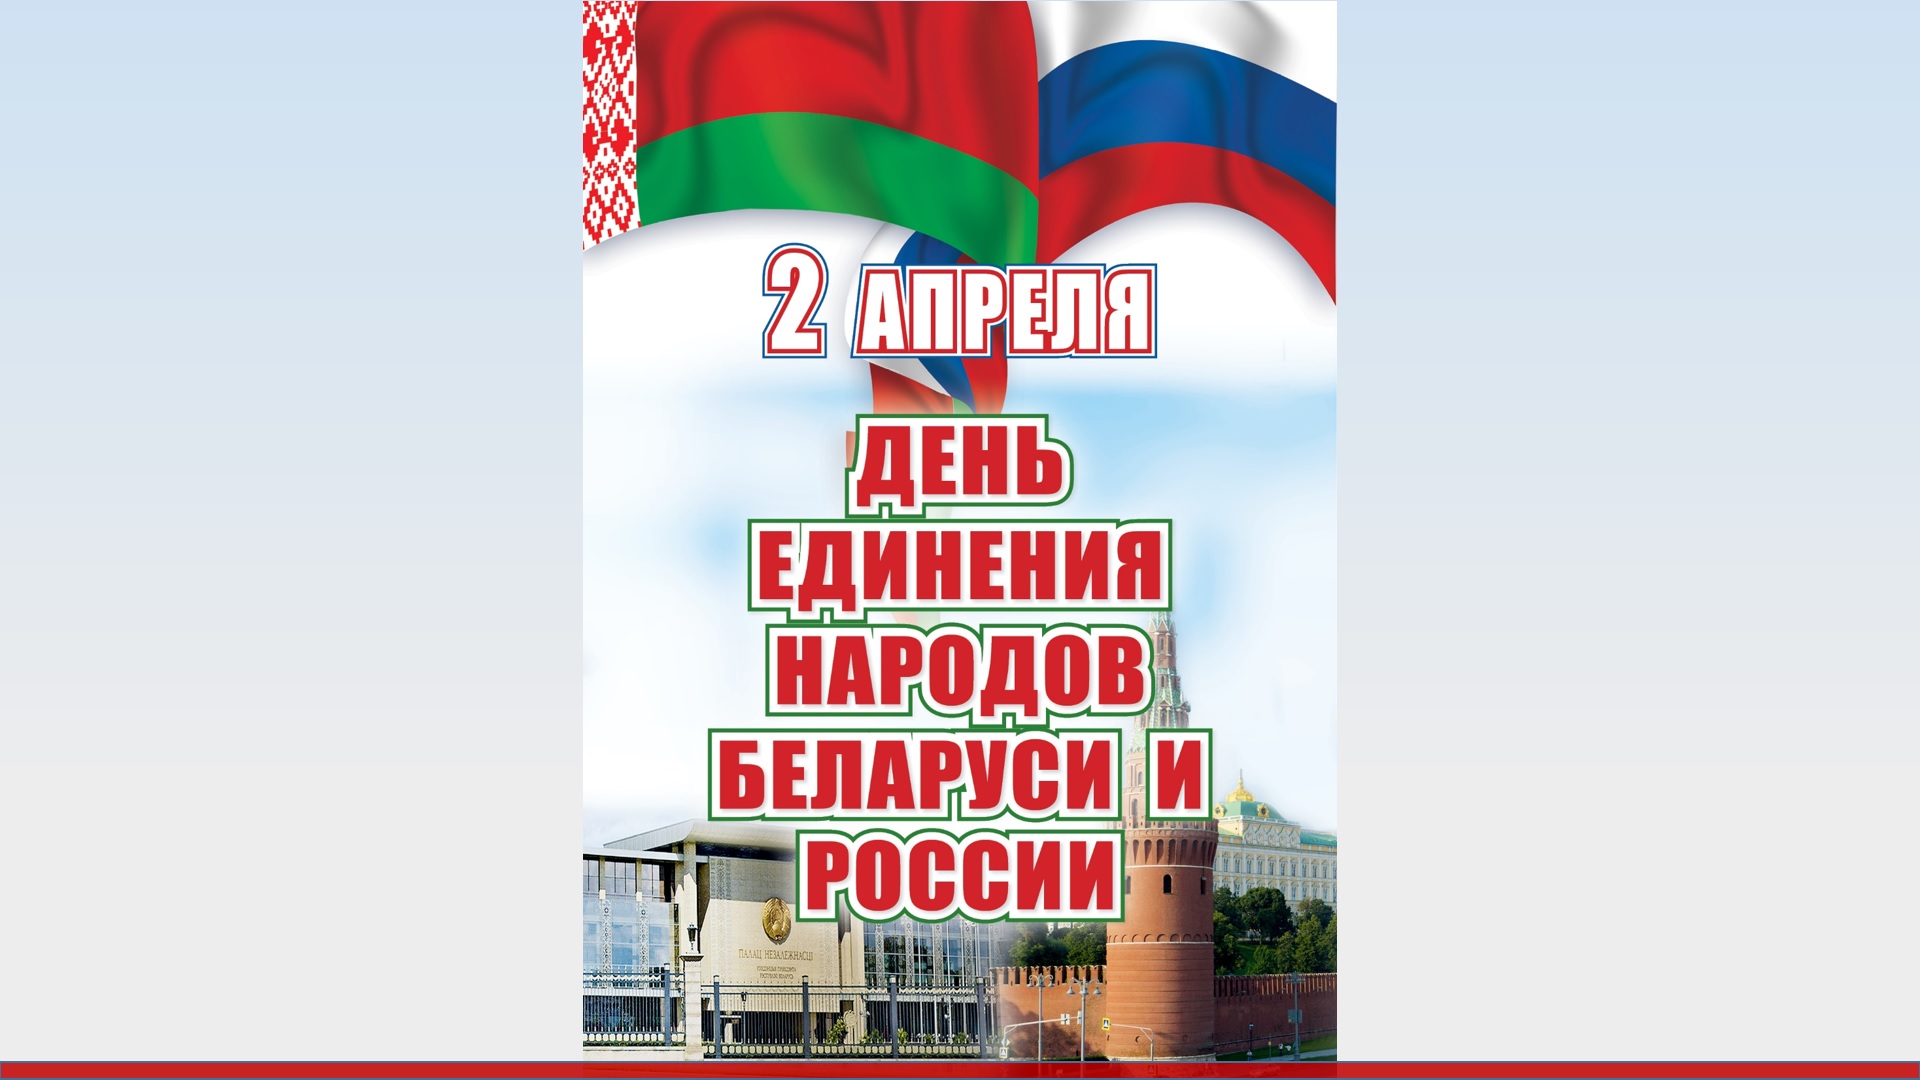 День единения россии и белоруссии мероприятия